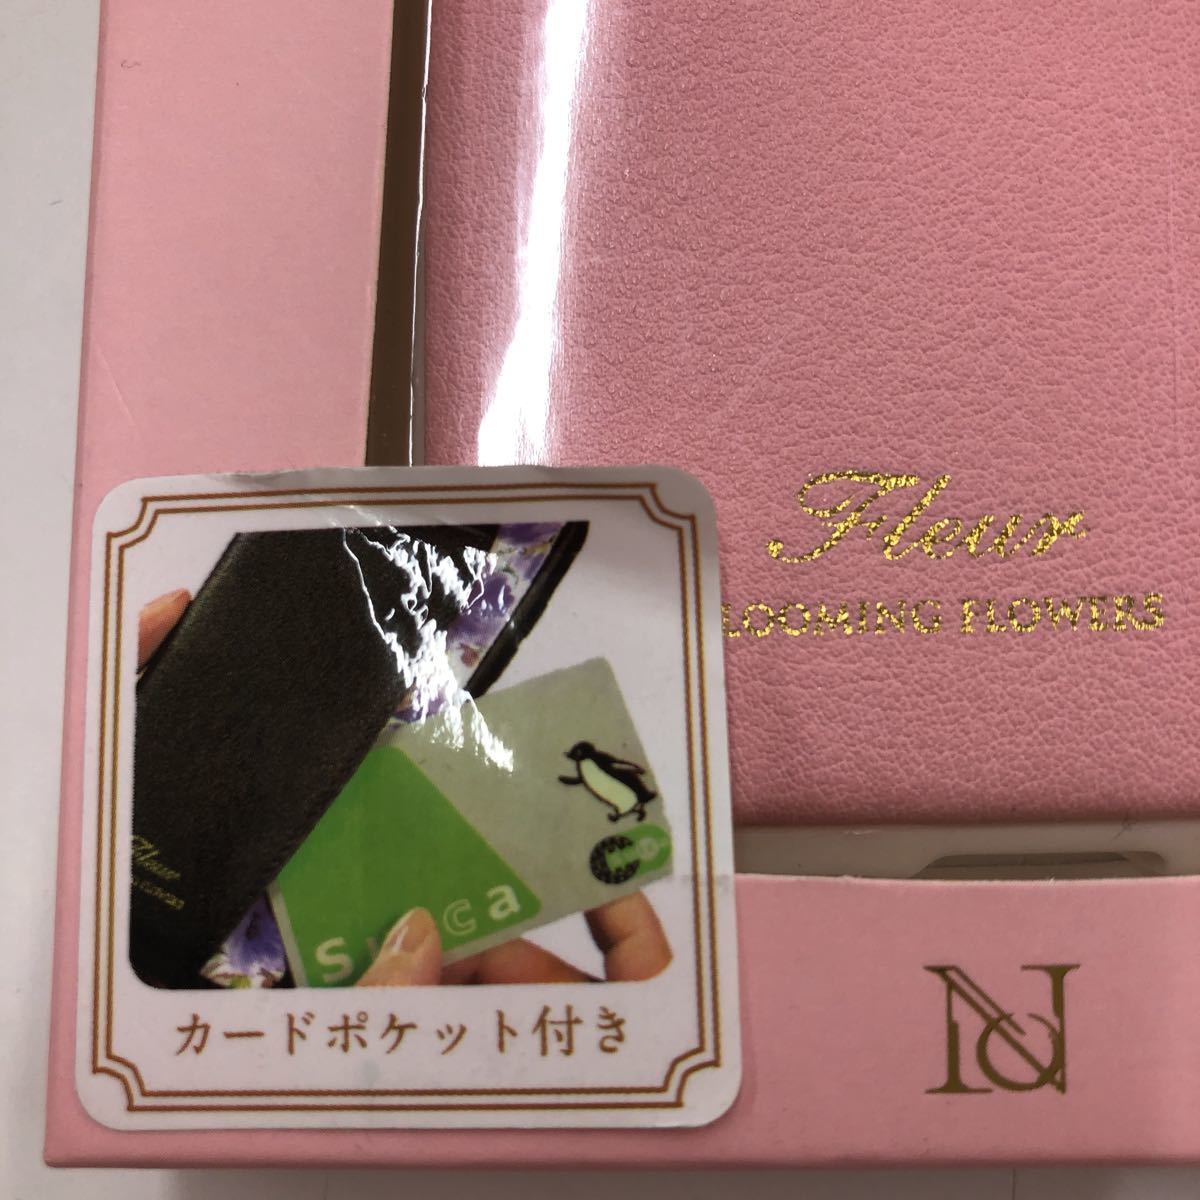 NATURAL design iPhoneX Xs (5.8 дюймовый ) кейс FLEUR PINK розовый ударная абсорбция ударопрочный карта карман есть iP8-FLEP05